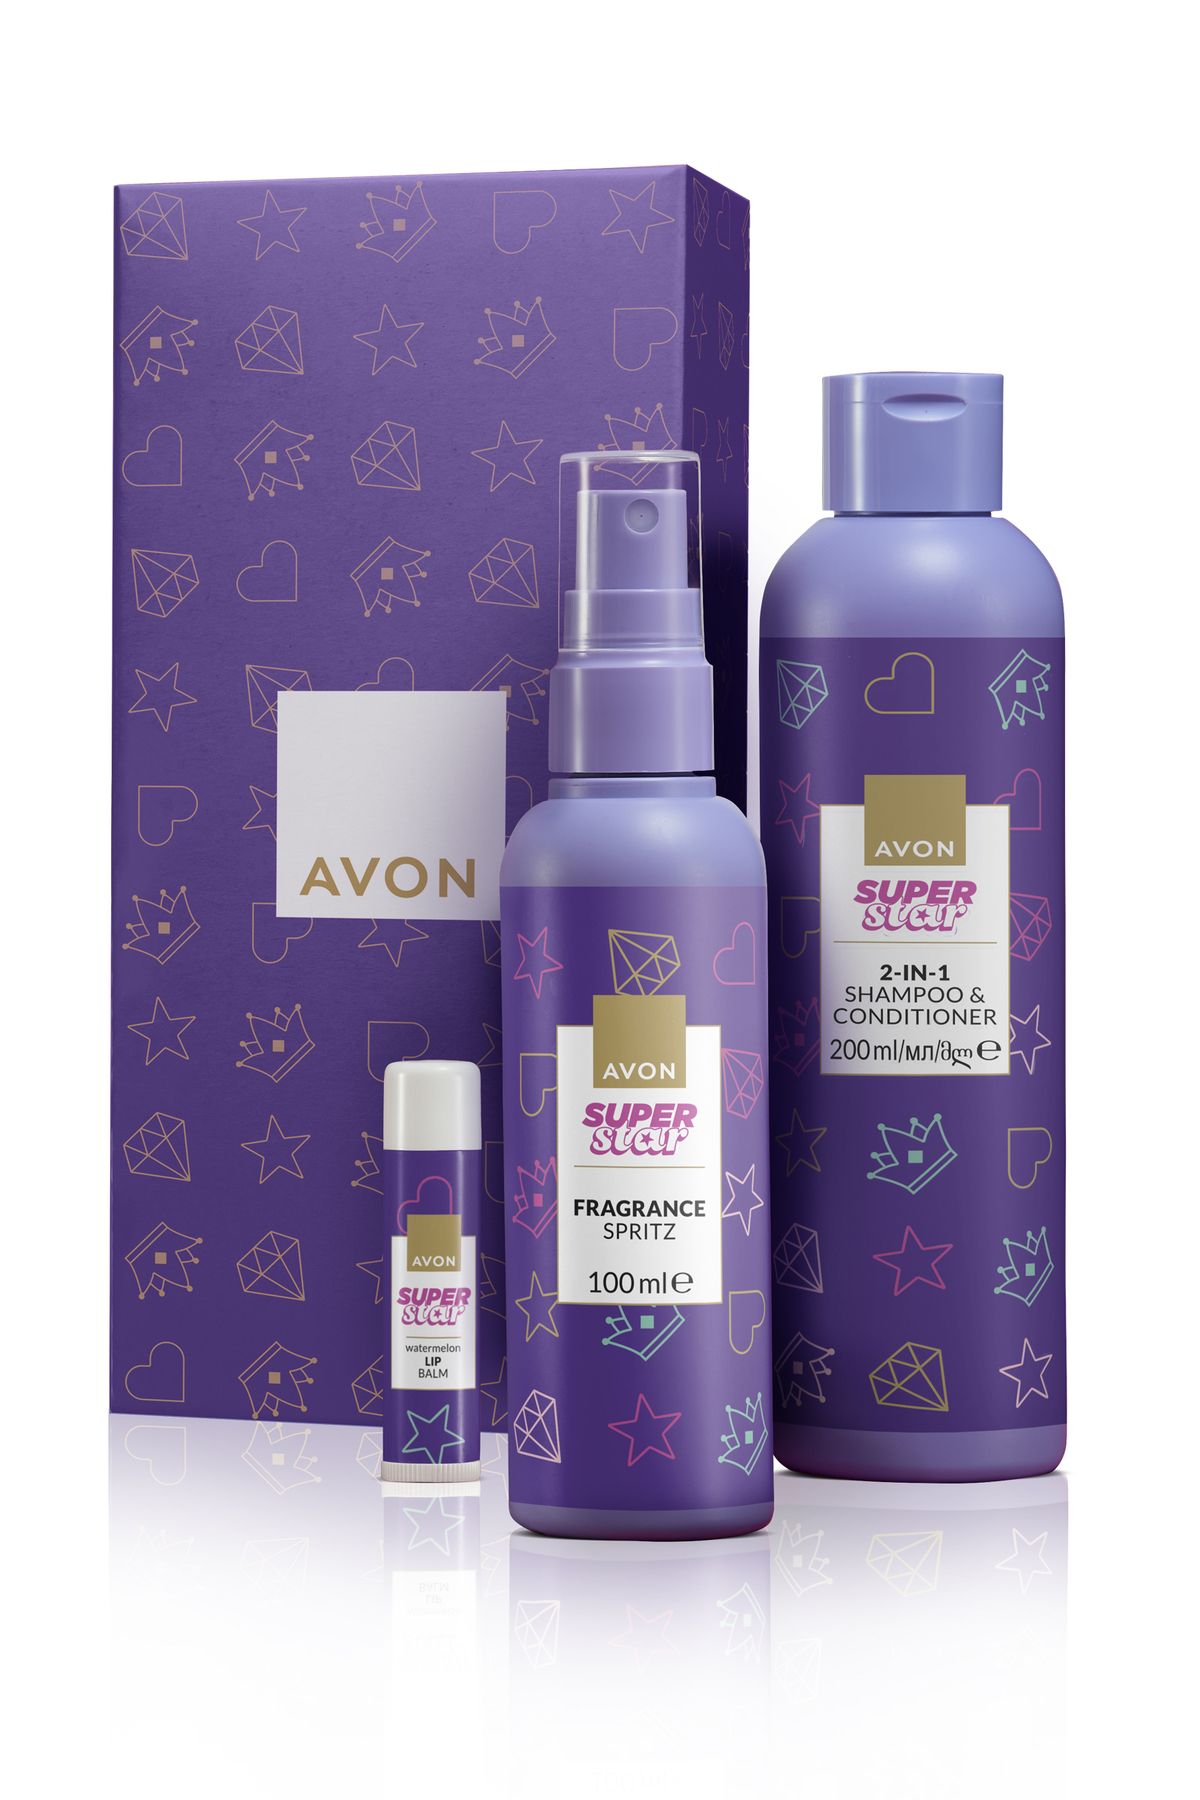 Avon Super Star Kız Çocuklar için Şampuan ve Saç Kremi Bodymist ve Dudak Balmı Hediye Seti